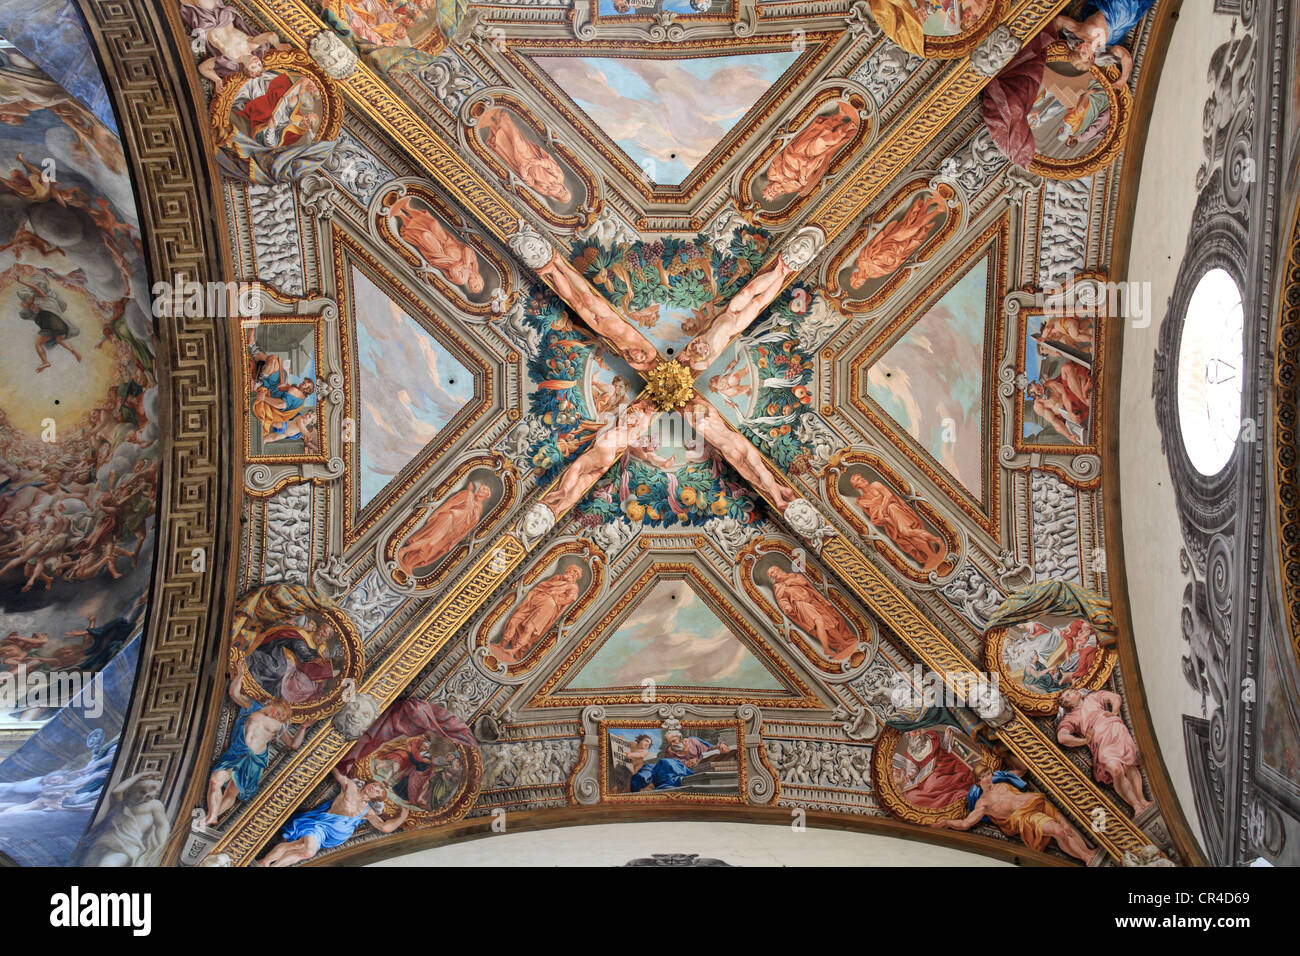 Avec des fresques au plafond, Duomo di Parma ou la Cathédrale de Parme, Piazza Duomo, Parme, Emilie-Romagne, Italie, Europe Banque D'Images